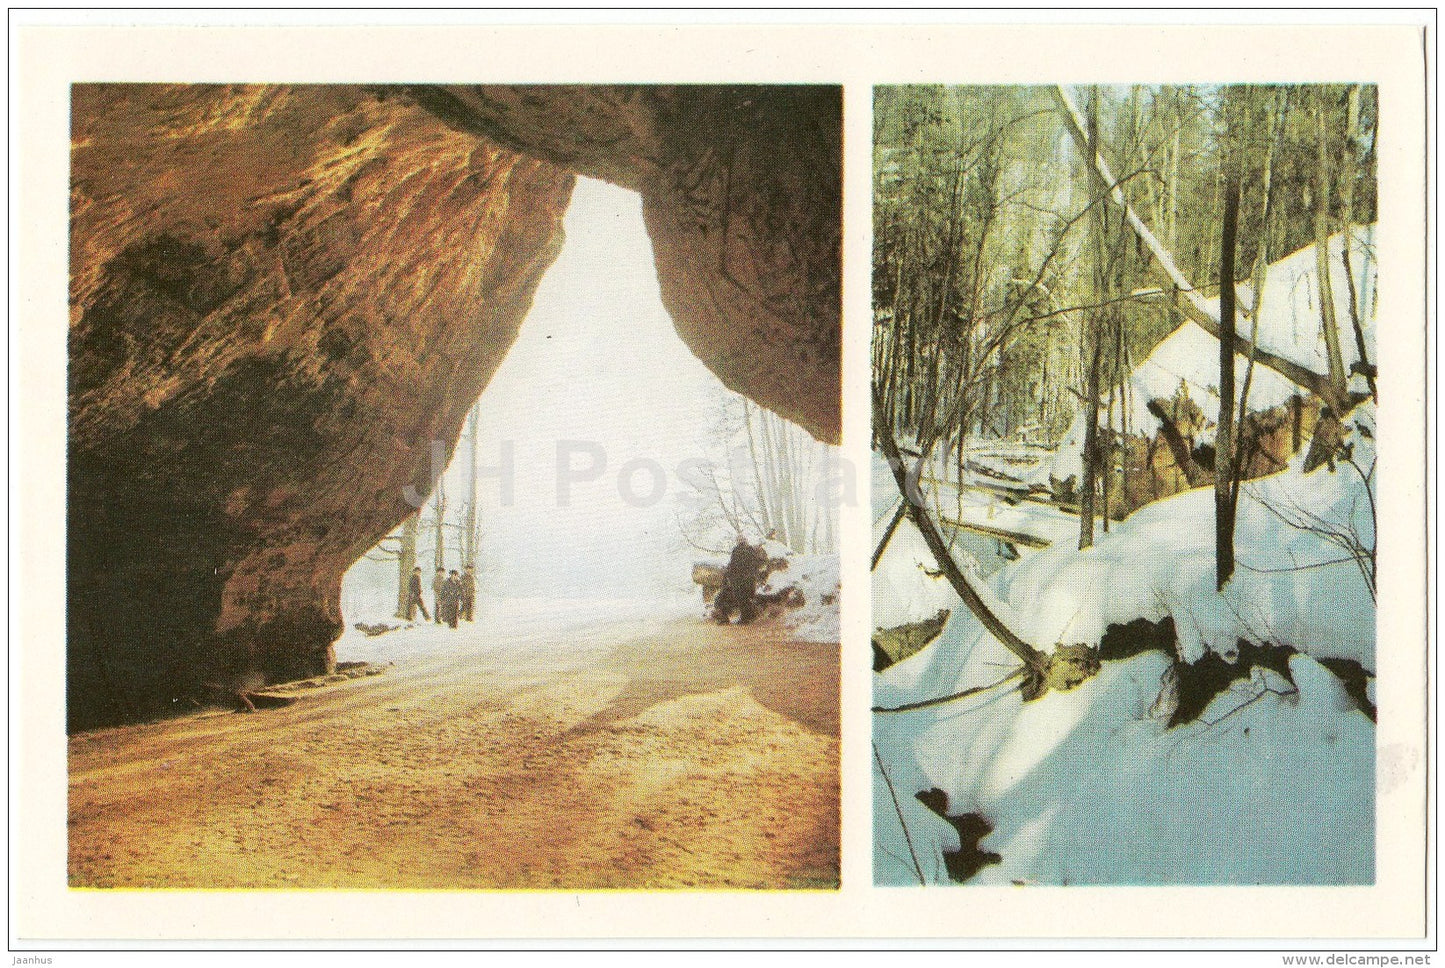 Gutmana Cave - Sigulda - 1984 - Latvia USSR - unused - JH Postcards